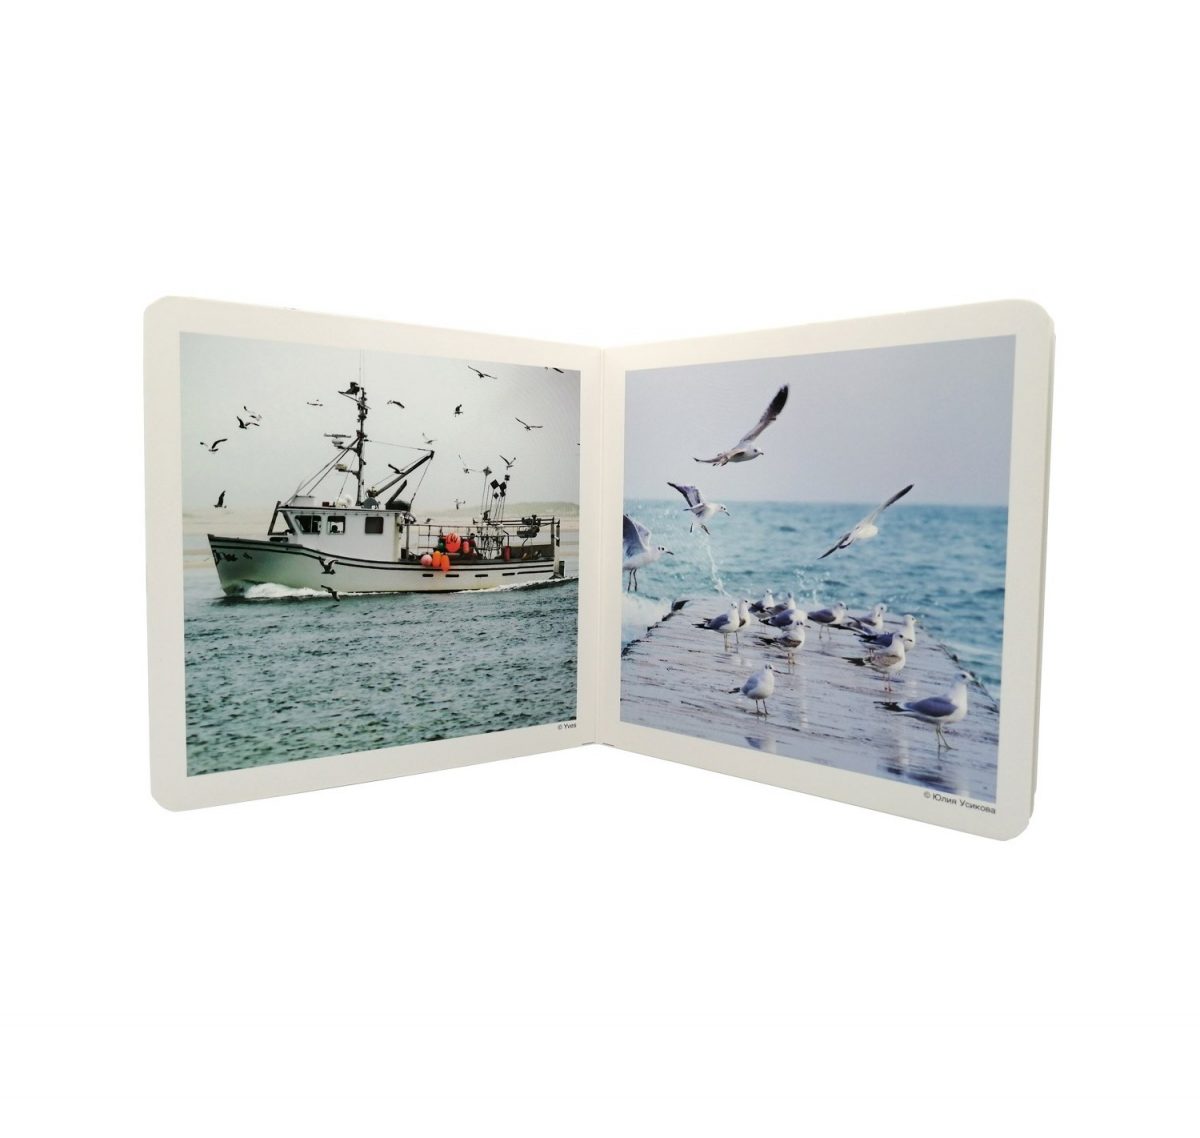 Libro de fotografías de aspectos relacionados con el mar. Se incluyen diez fotografías de: banco de peces, piragüismo, pescador, faro, embarcación, gaviotas, playa, submarinismo, coral y olas.